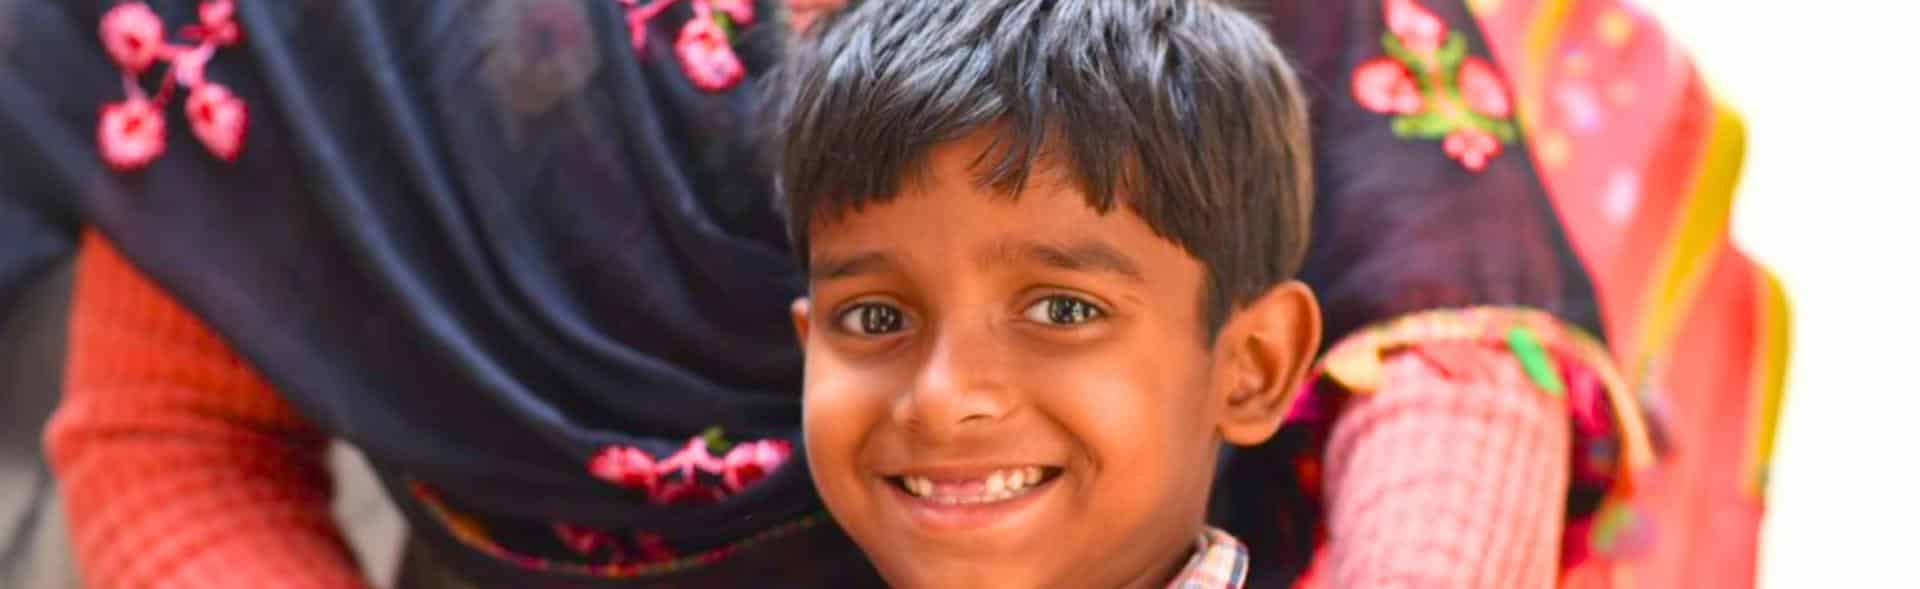 Best Child Betterment NGOs in India | Bal Raksha Bharat